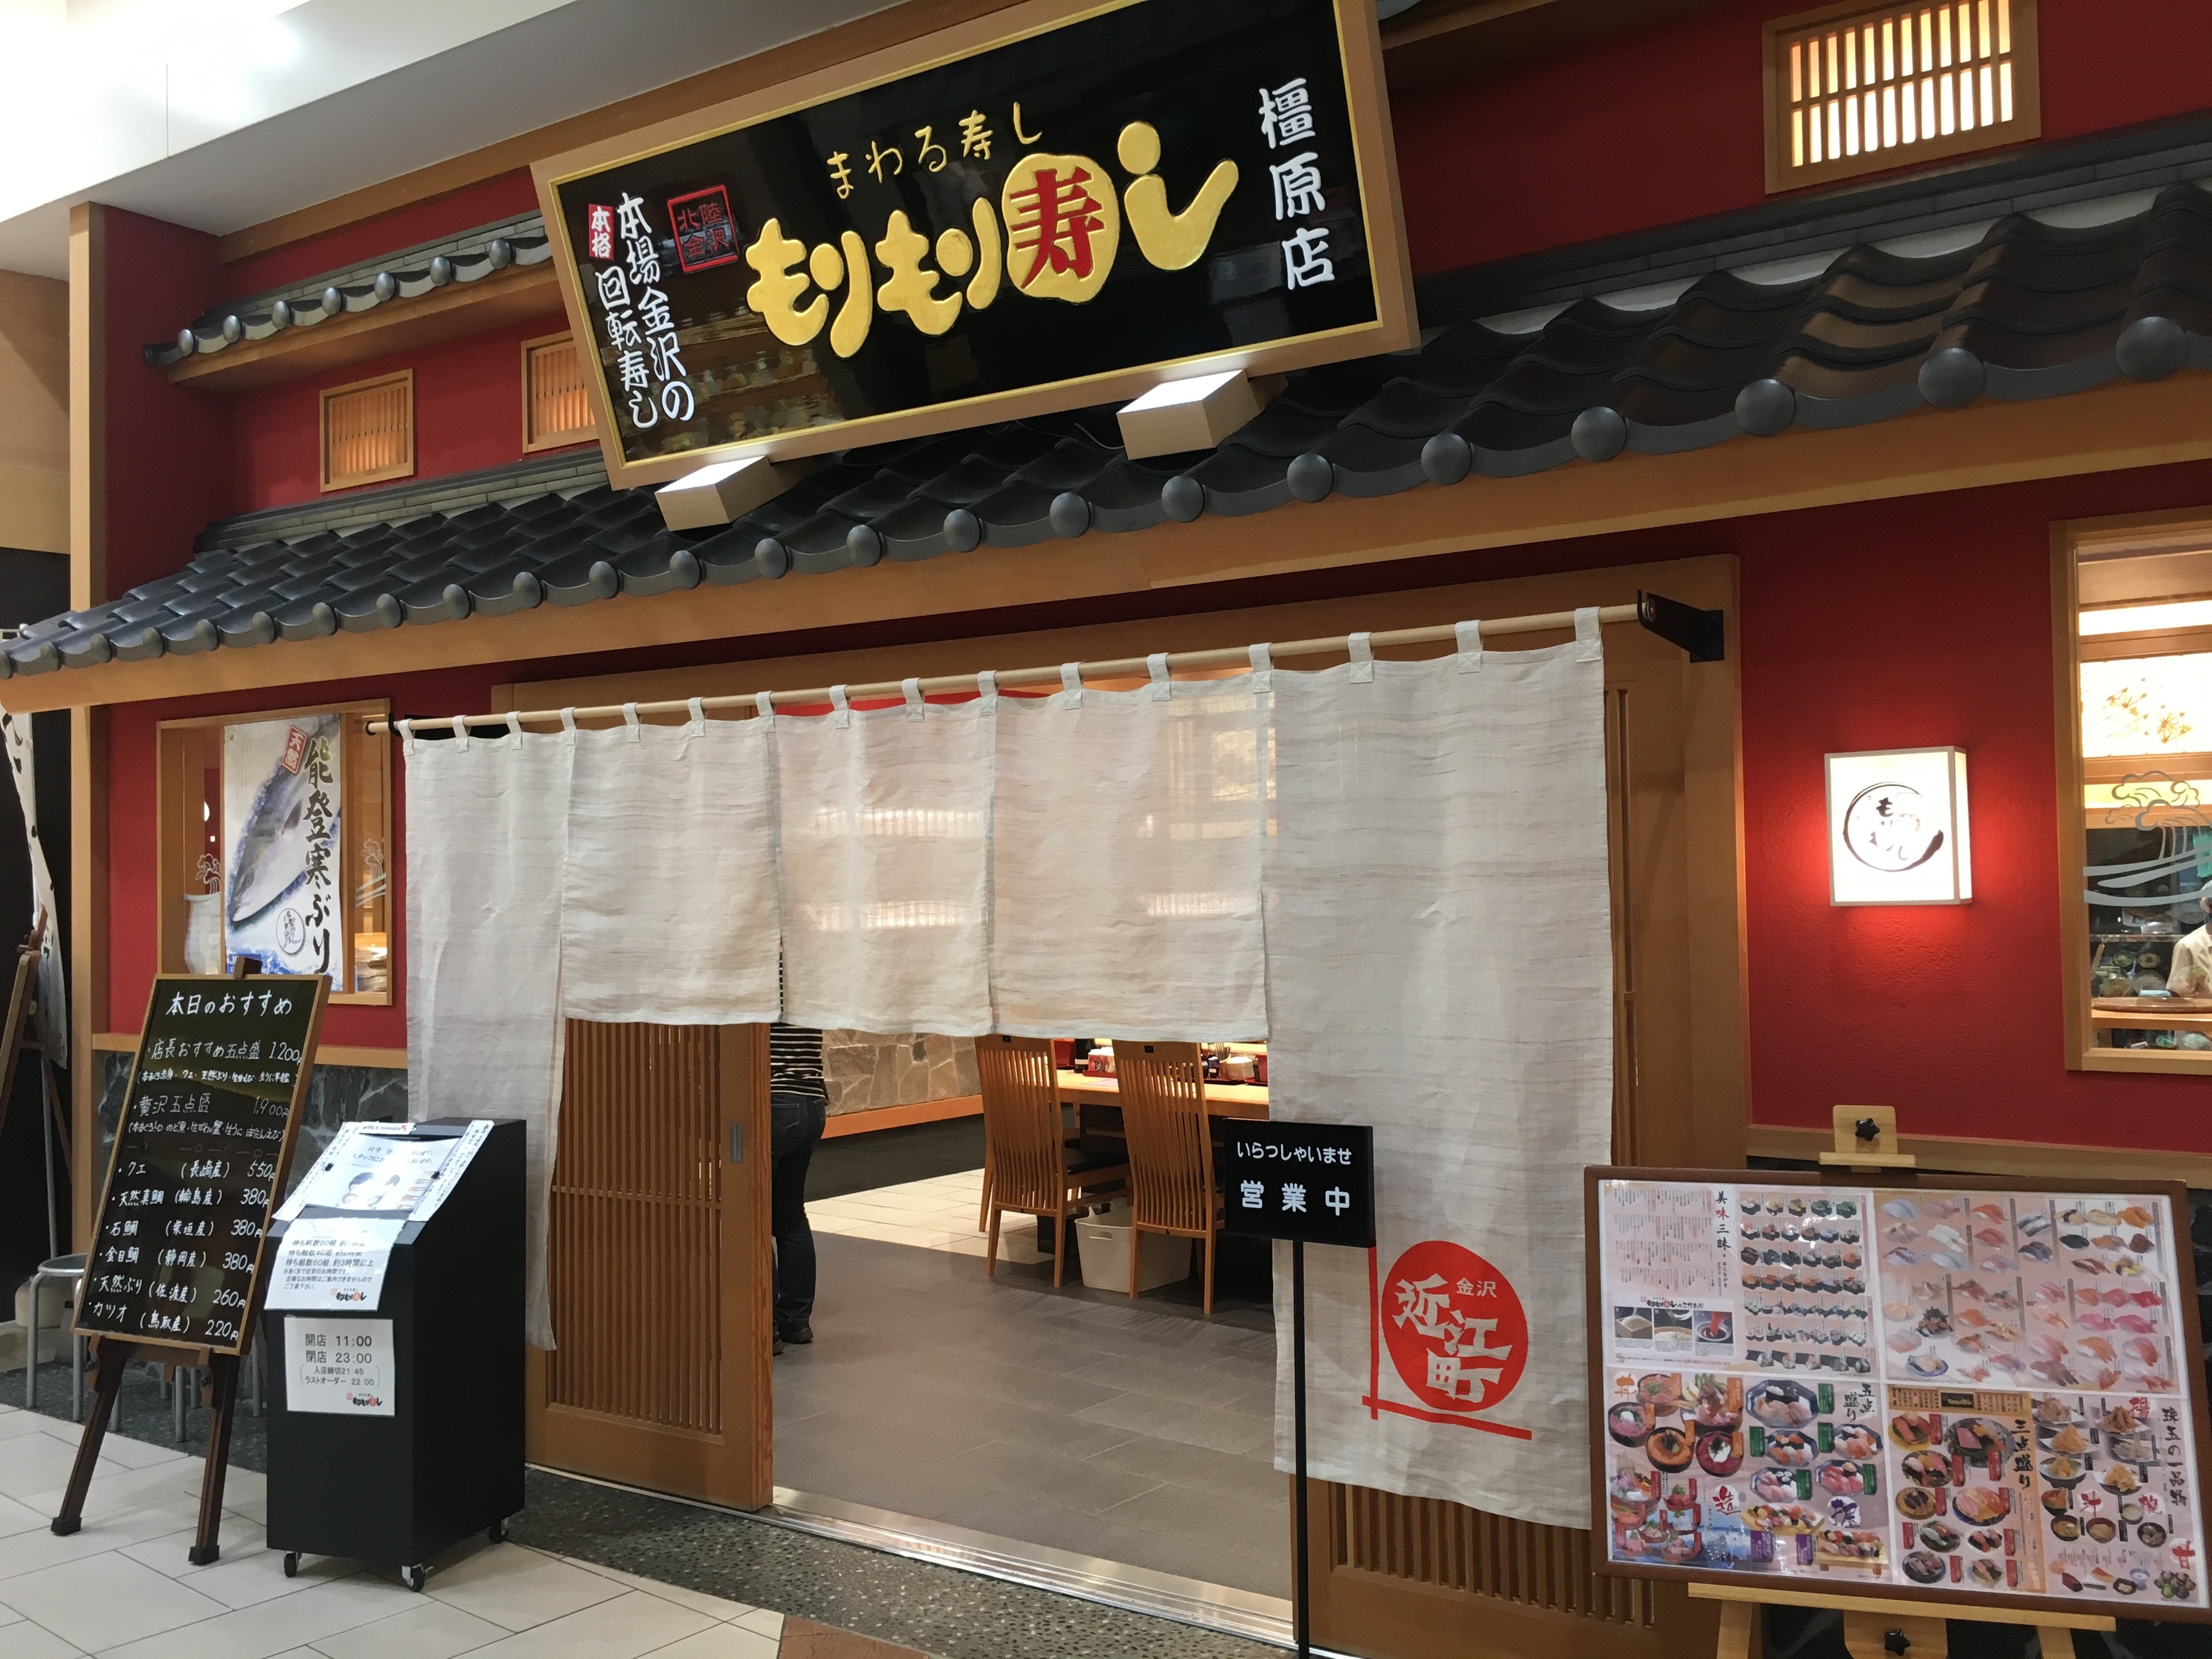 石川県発祥の人気回転寿司「もりもり寿司」がうますぎる!!メニュー豊富でネタも大きい